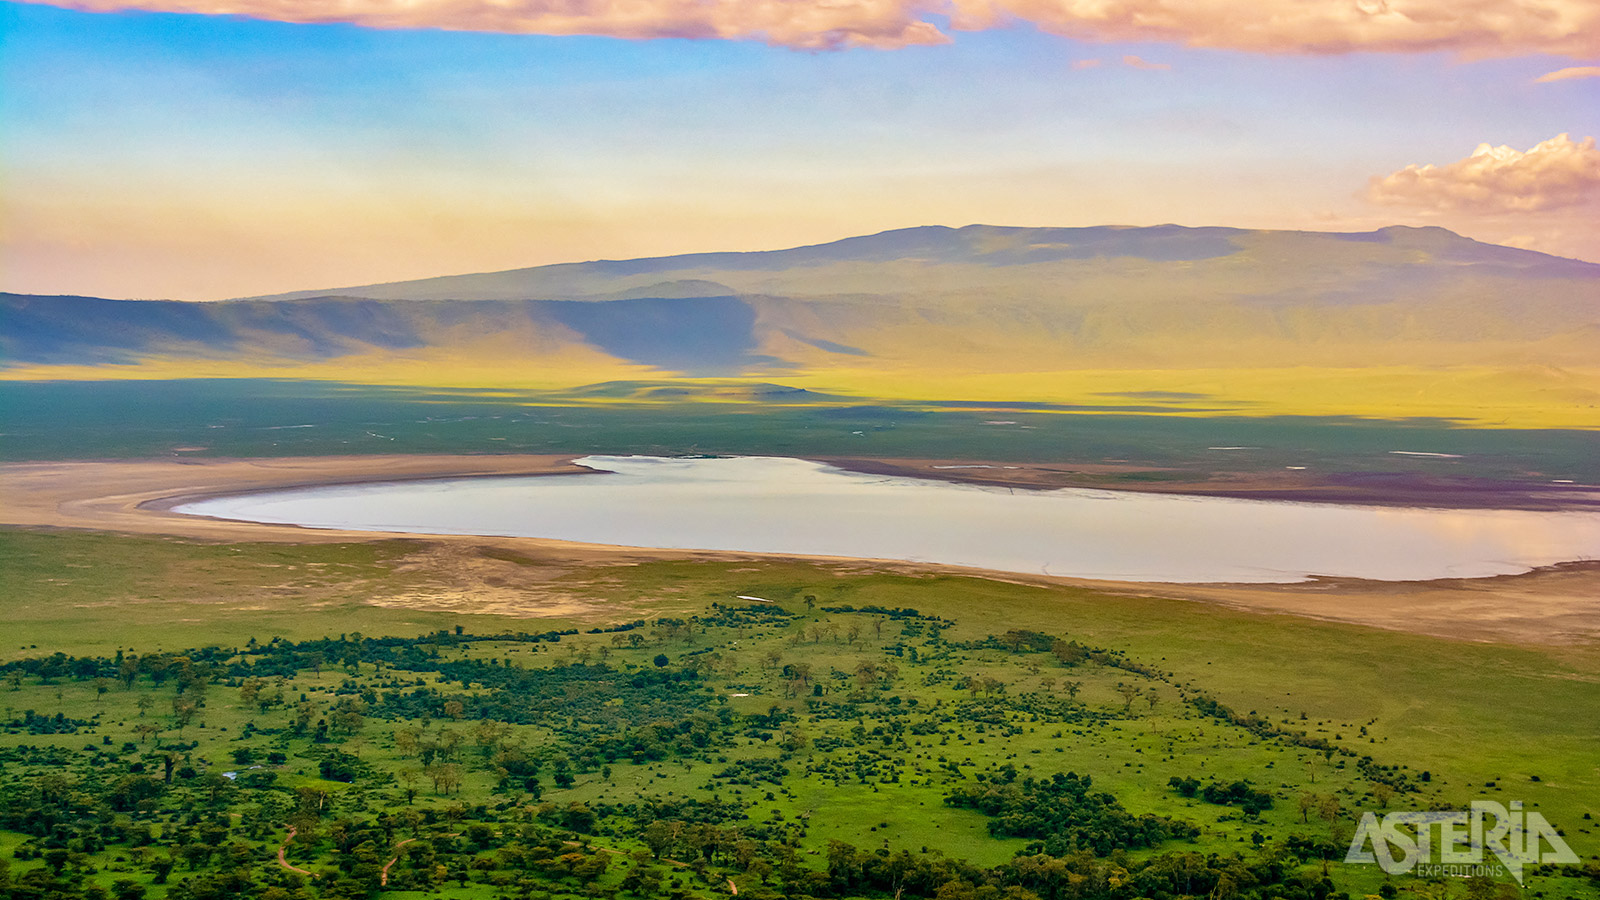 De Ark van Noah - zoals de Ngorongorokrater ook wordt genoemd - is de thuisbasis van neushoorns, olifanten, buffels, hyena’s en leeuwen